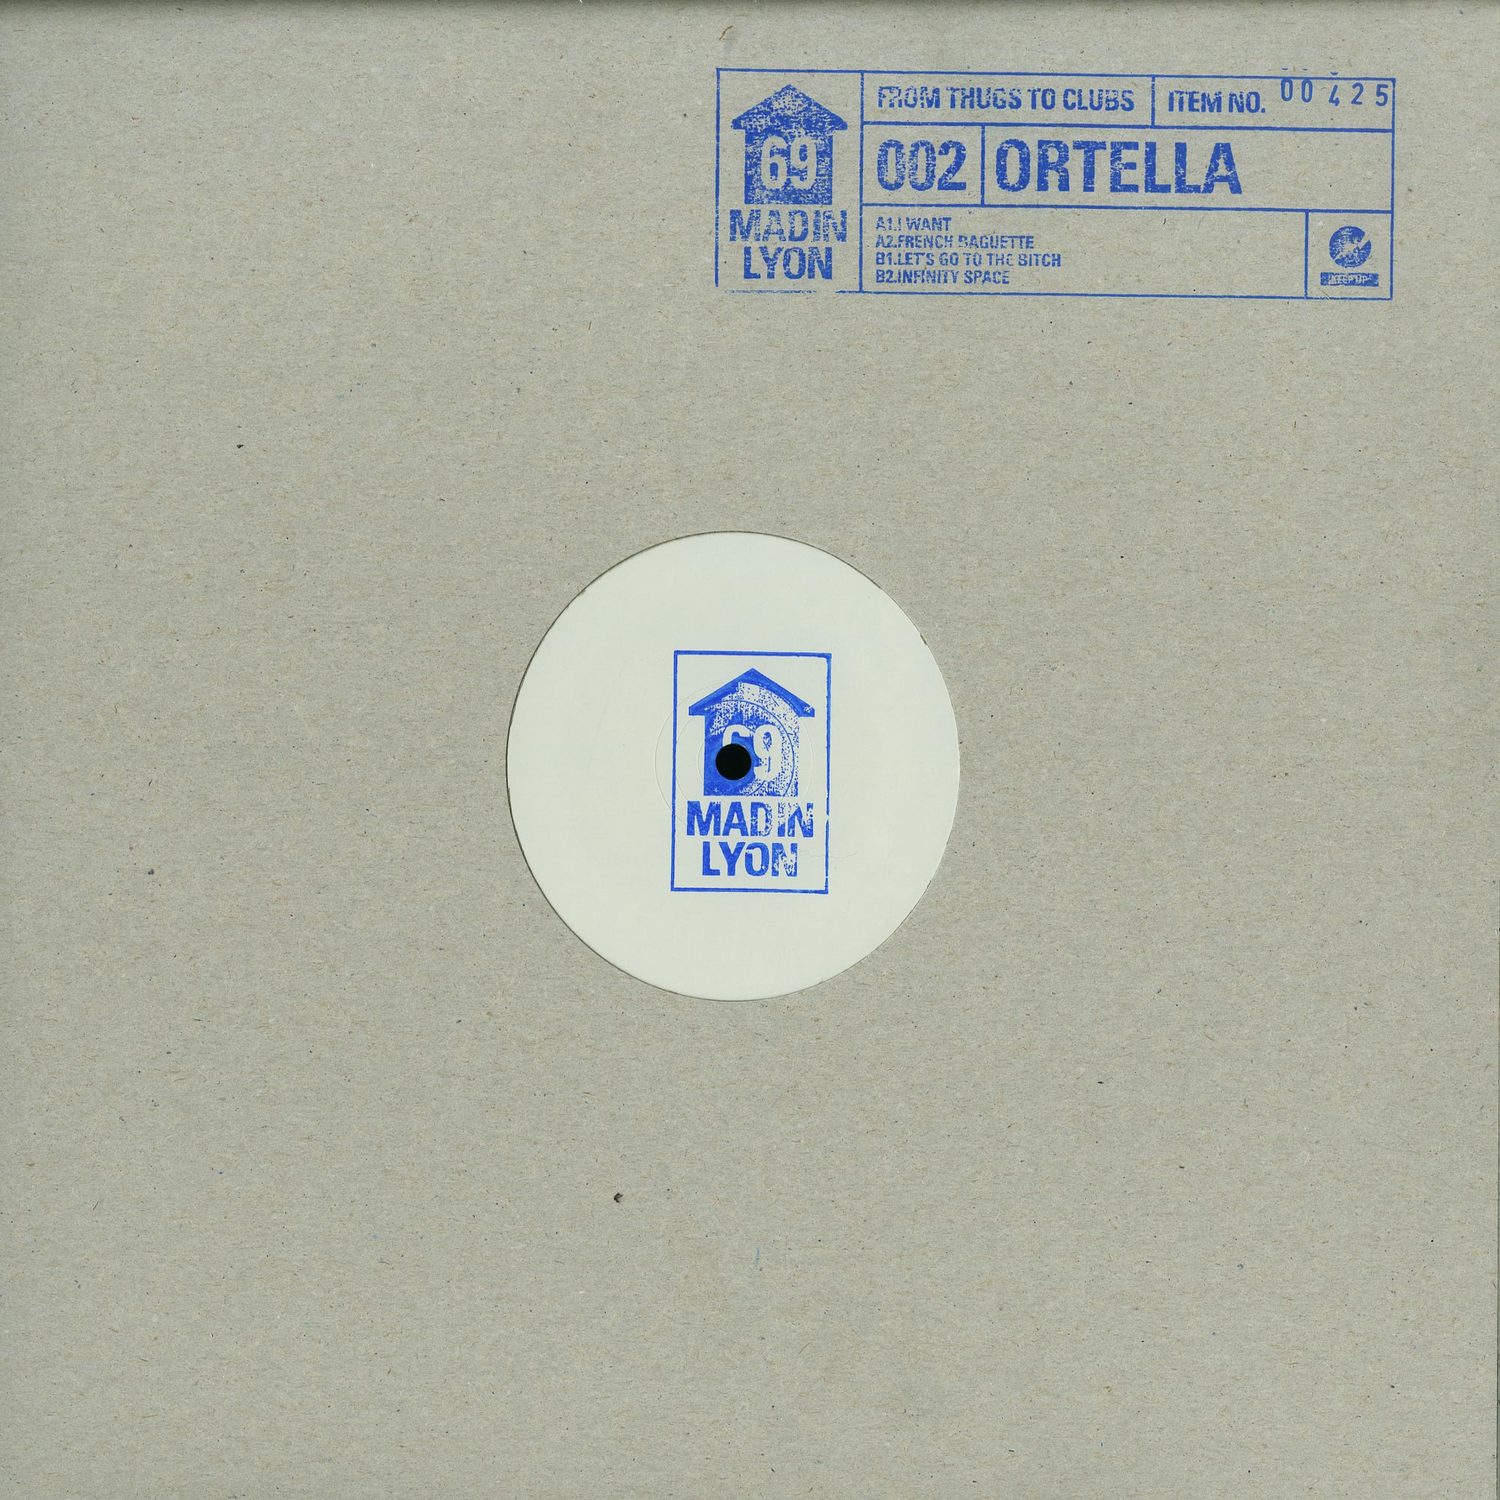 Ortella - 69002